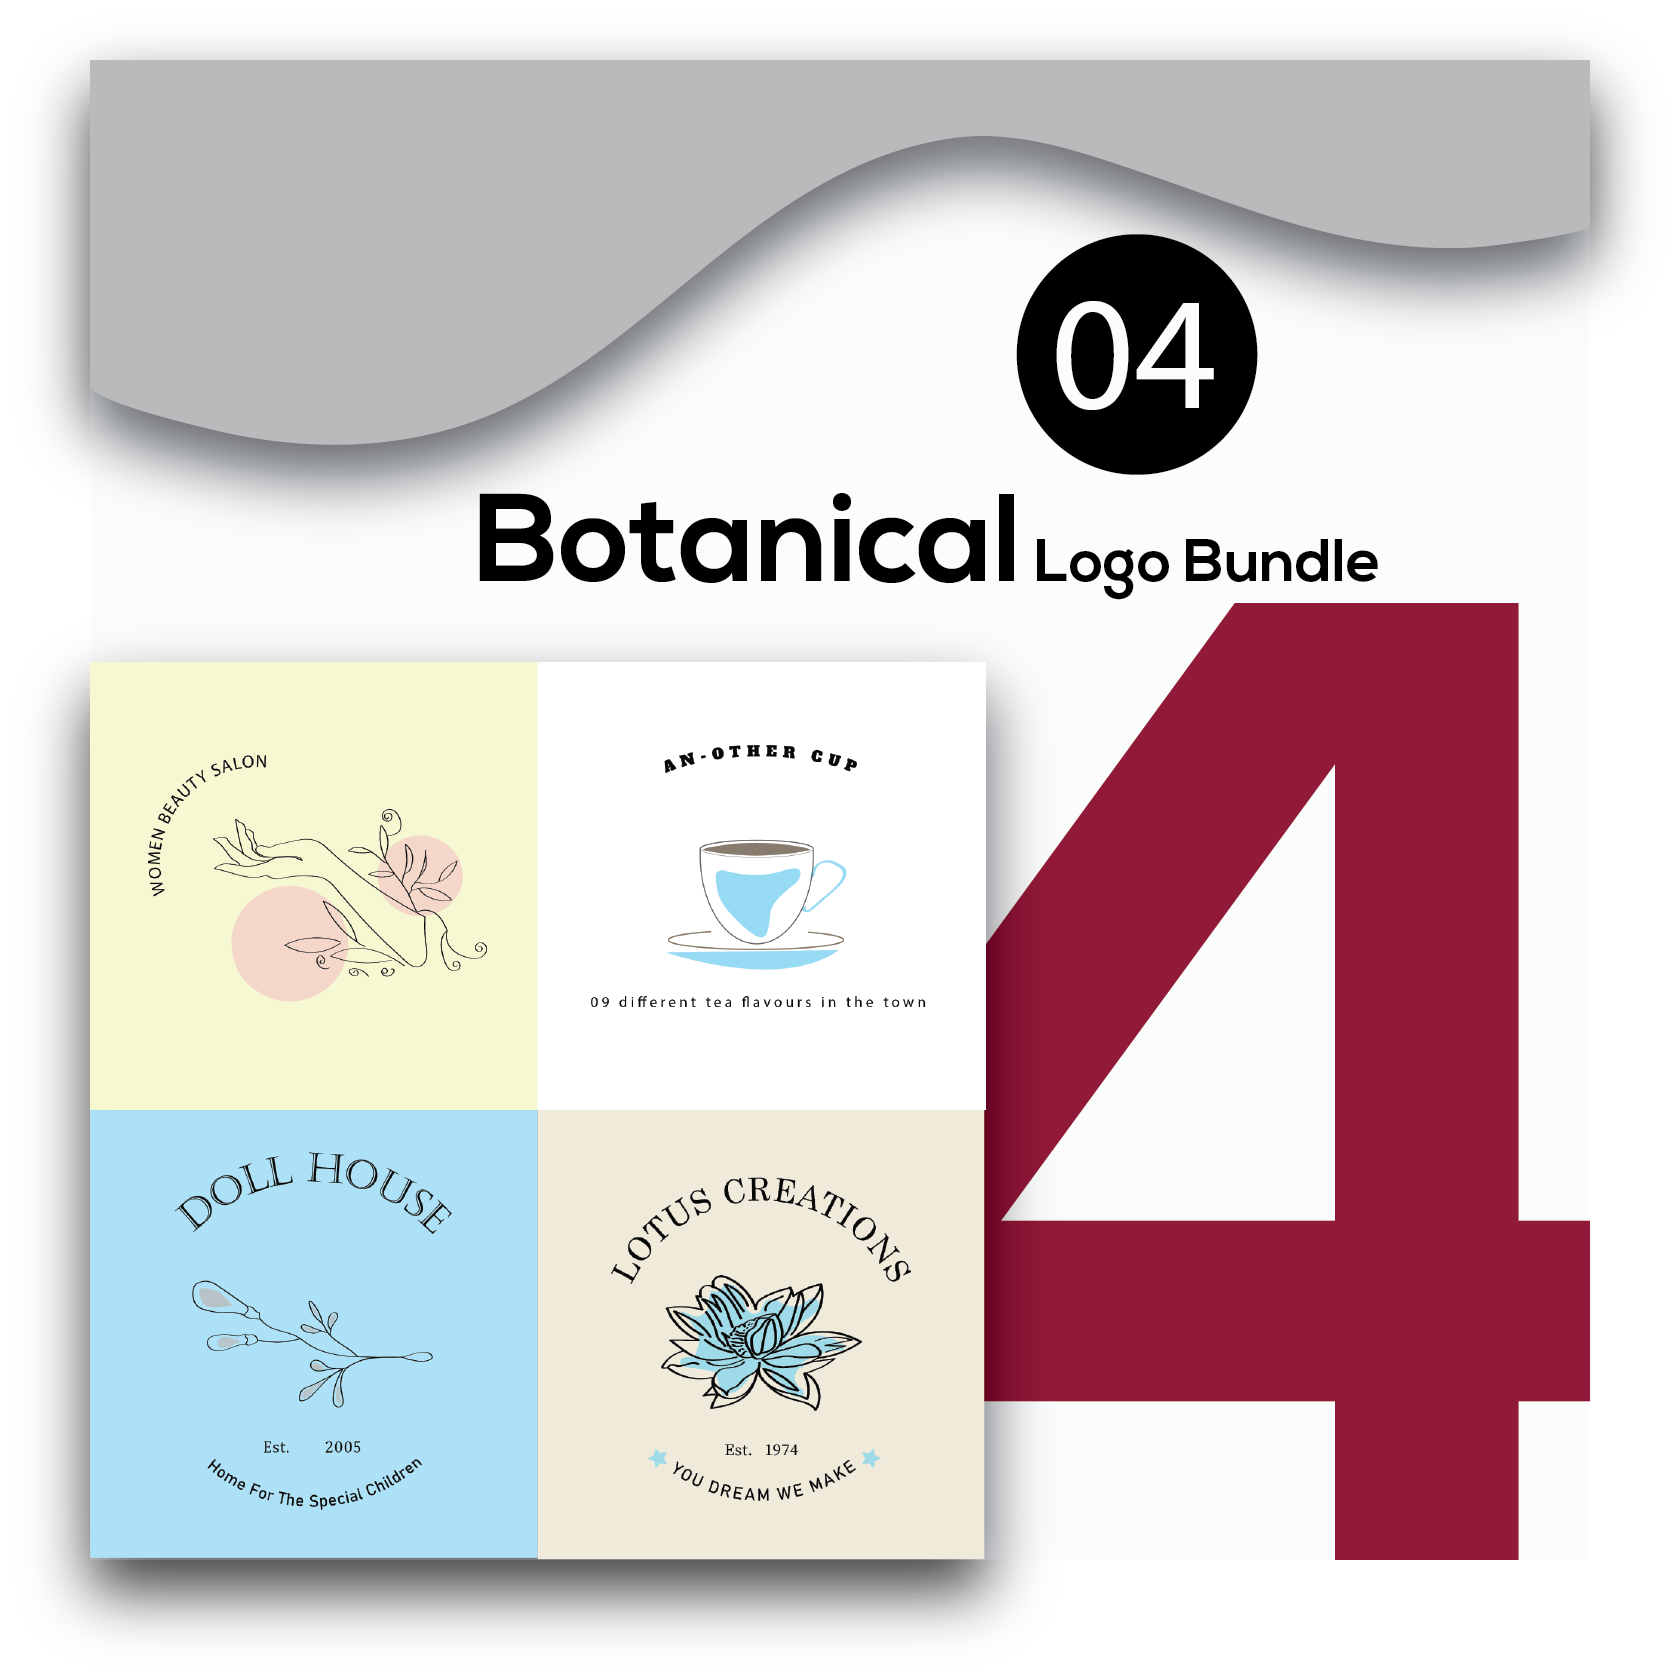 Botanical Logo Bundle cover image.